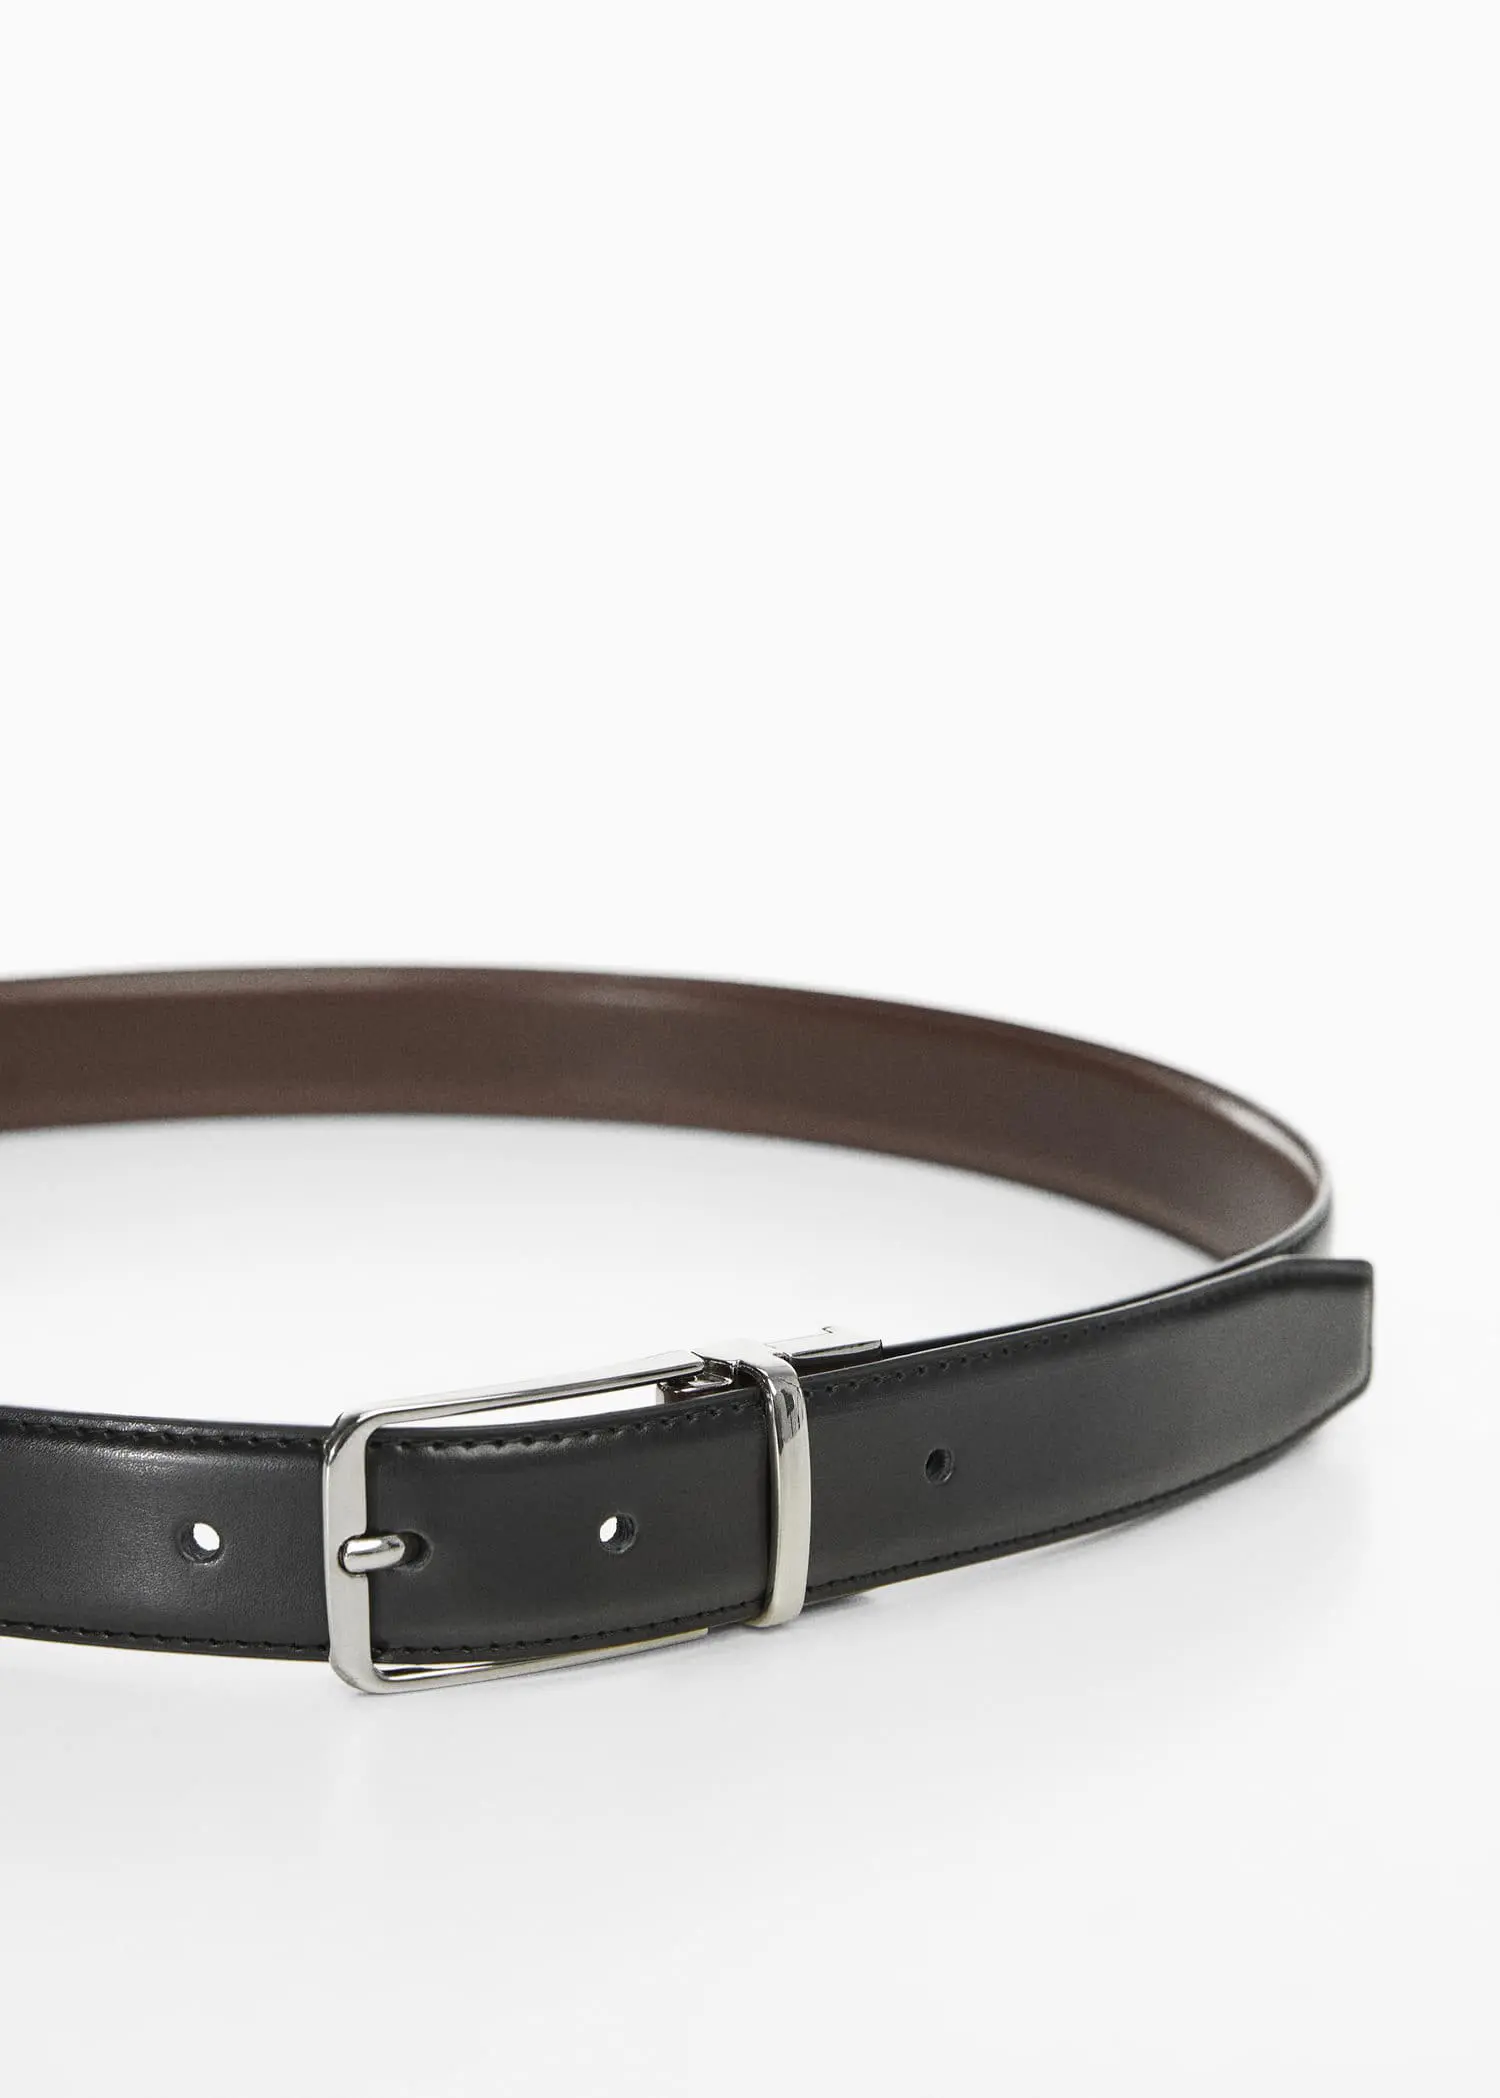 Mango Leather reversible belt. 1